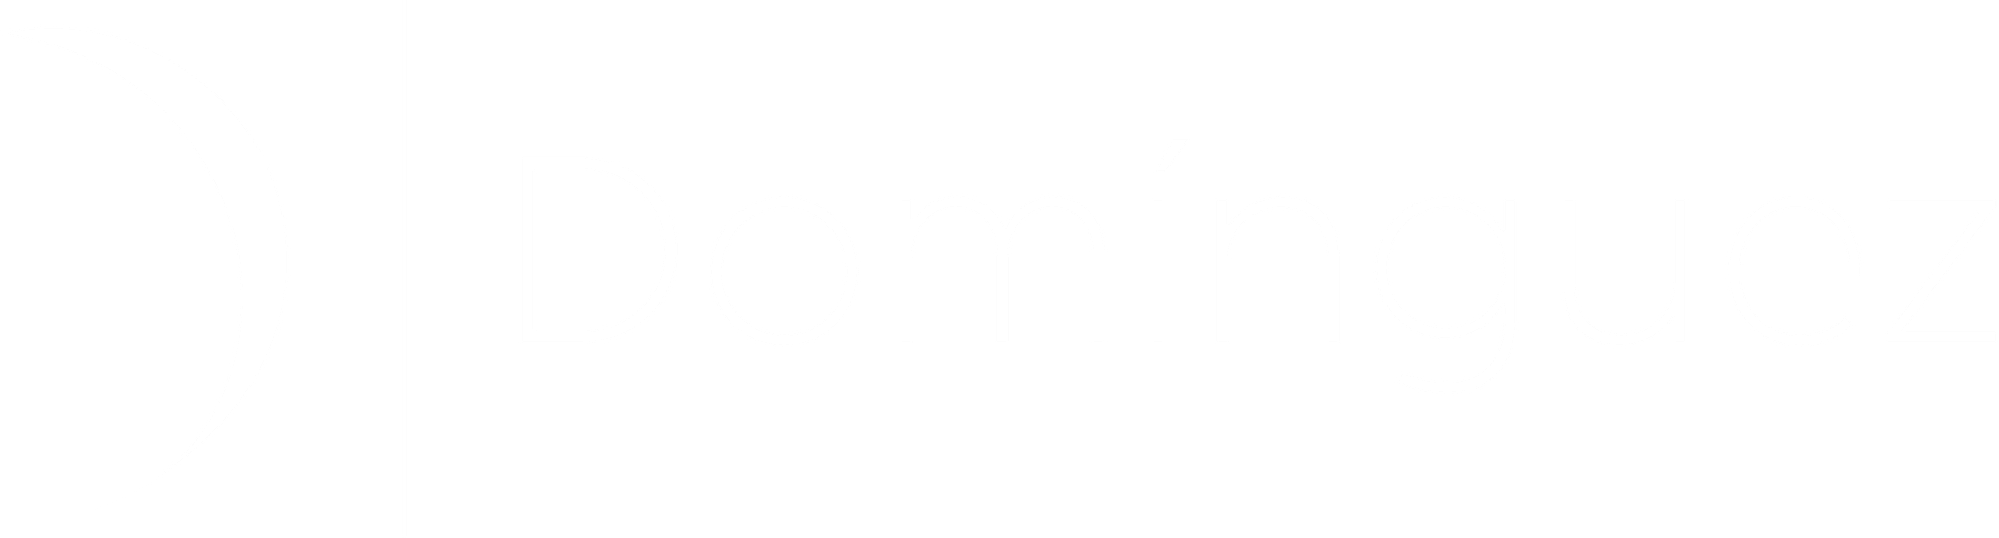 Domínguez musica logo